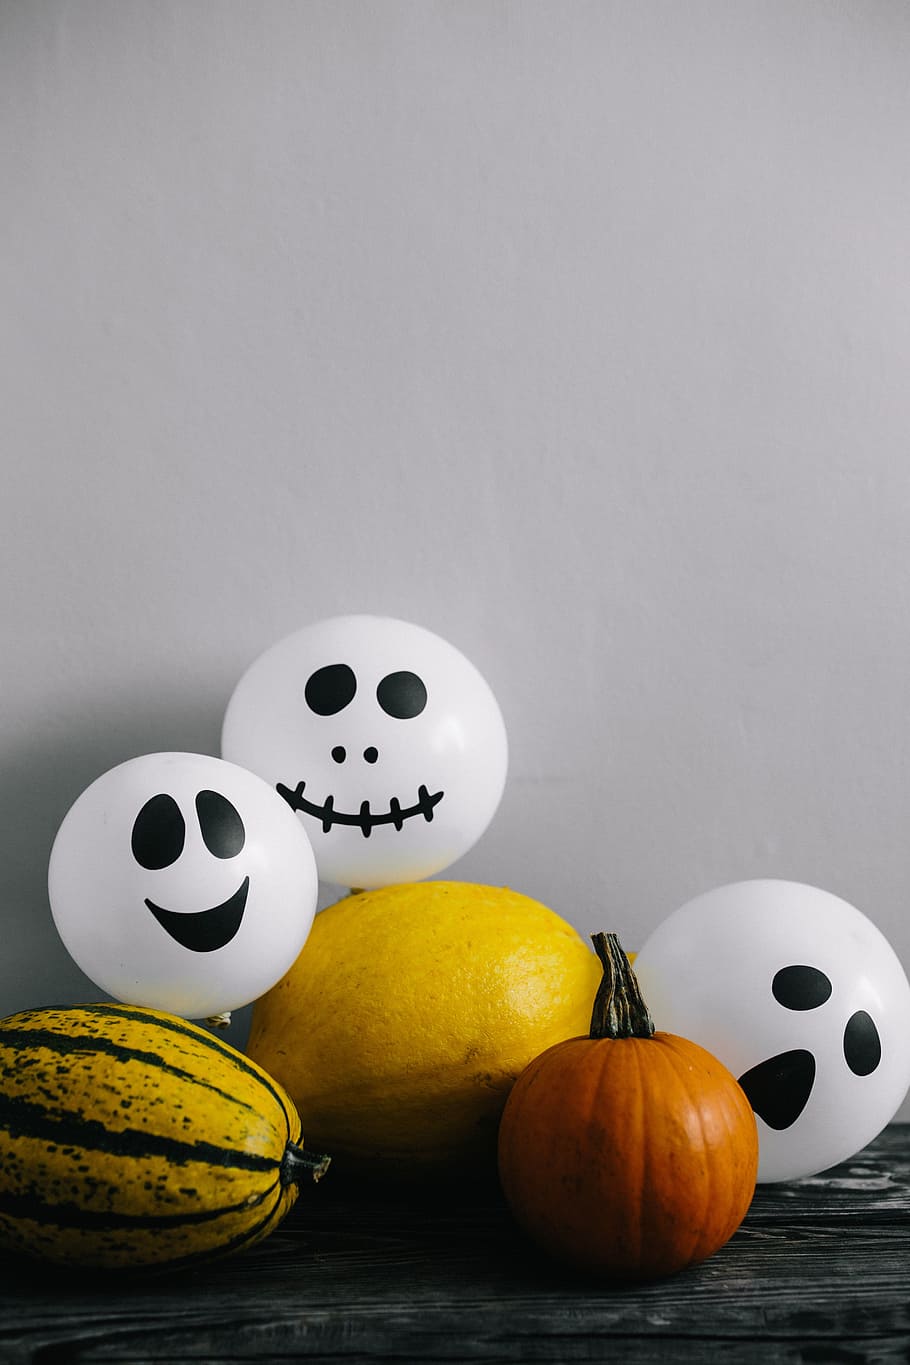 тыквы и хэллоуин, овощи, осень, fall, pumpkins, funny, halloween, ghosts, boo, Пища